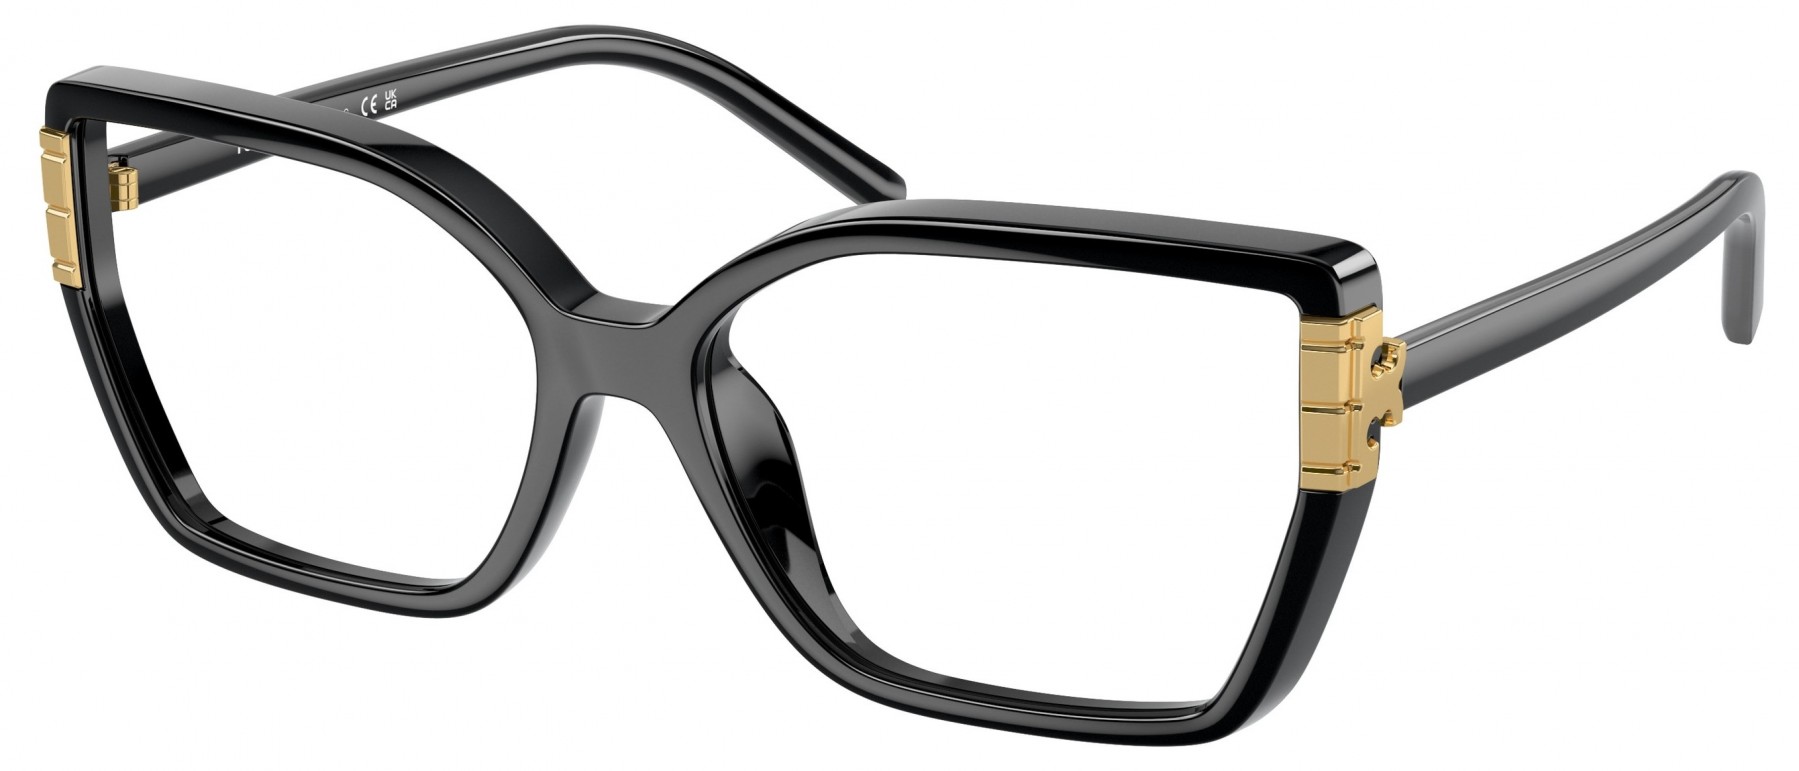 Tory Burch 4014U 1966 - Oculos de Grau